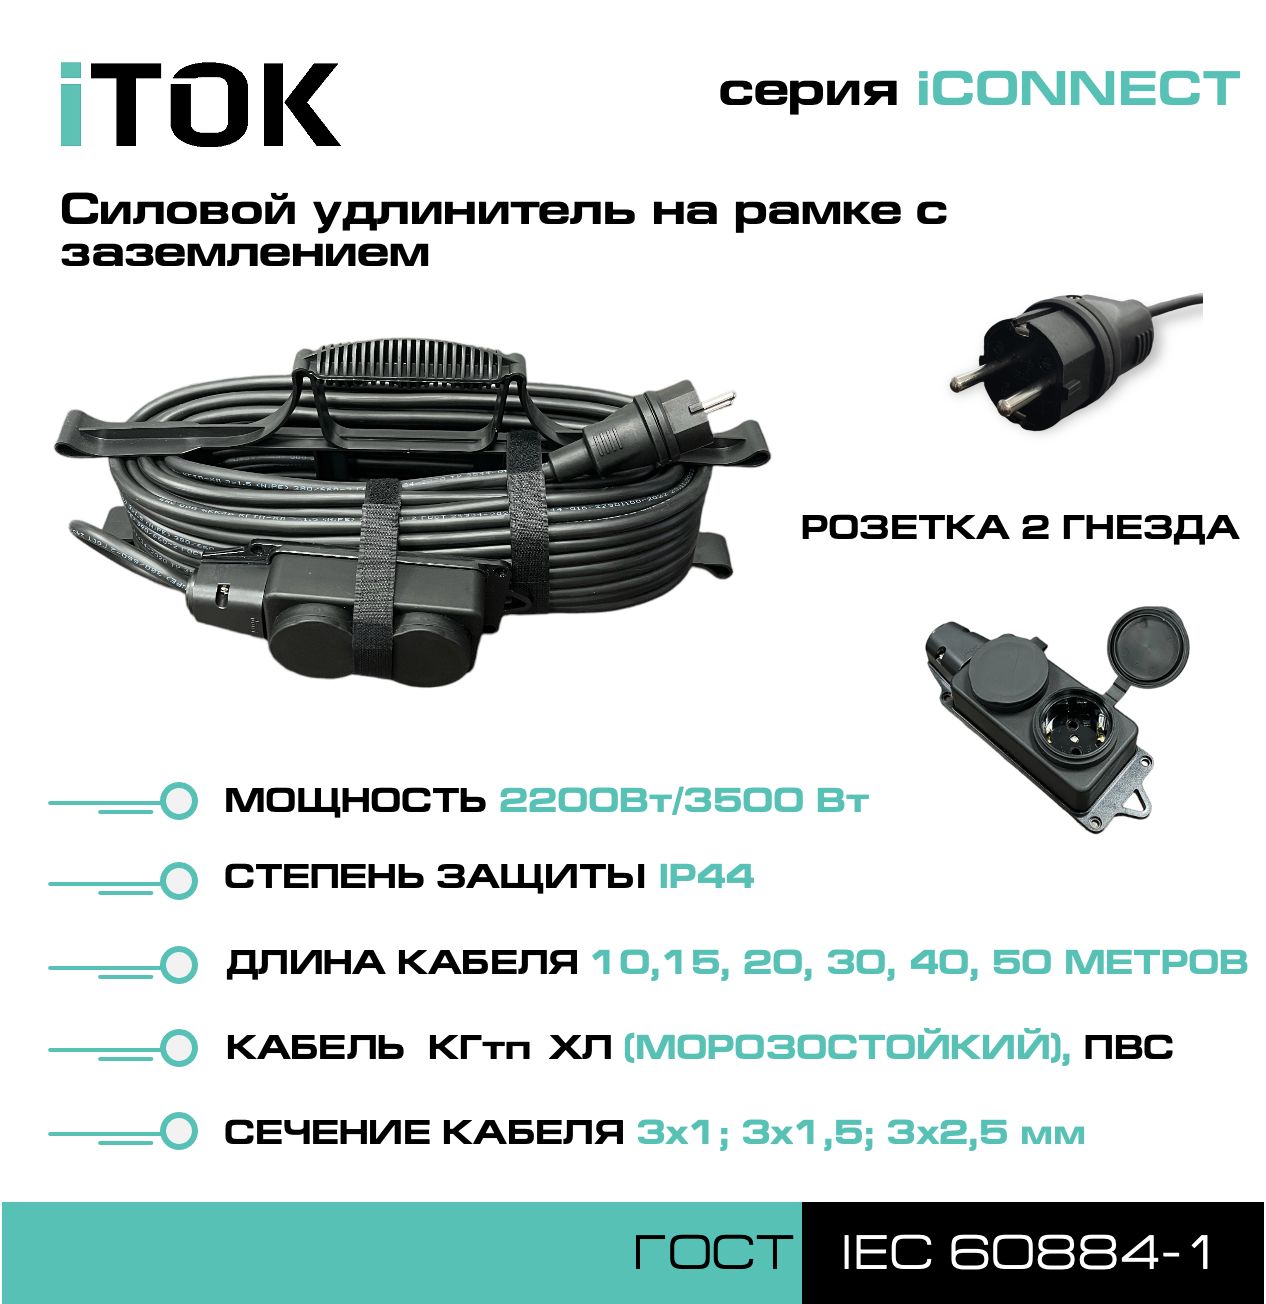 Удлинитель на рамке с заземлением серии iTOK iCONNECT ПВС 3х1 мм 2 гнезда IP44 50 м